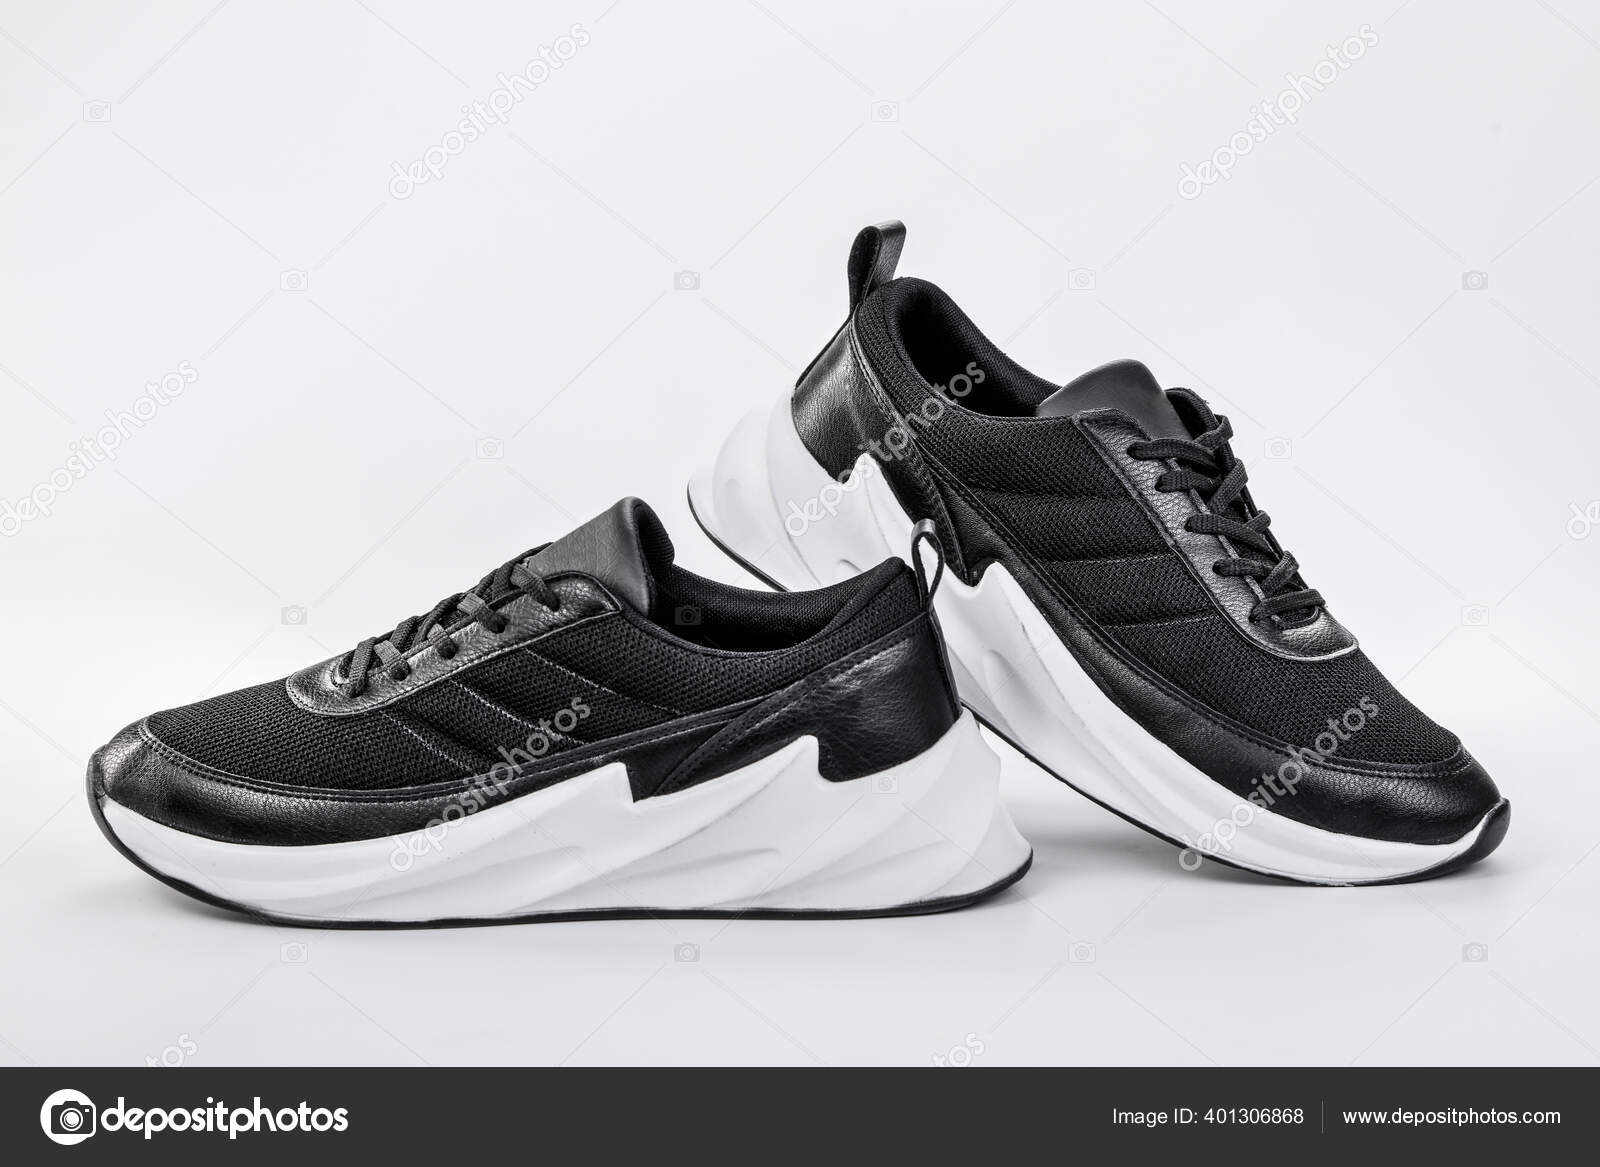 Mount Bank Mal humor honor Zapatos Para Los Zapatos Cómodos Sport Black Sobre Fondo Blanco: fotografía  de stock © tohid.hashemkhani@yahoo.com #401306868 | Depositphotos